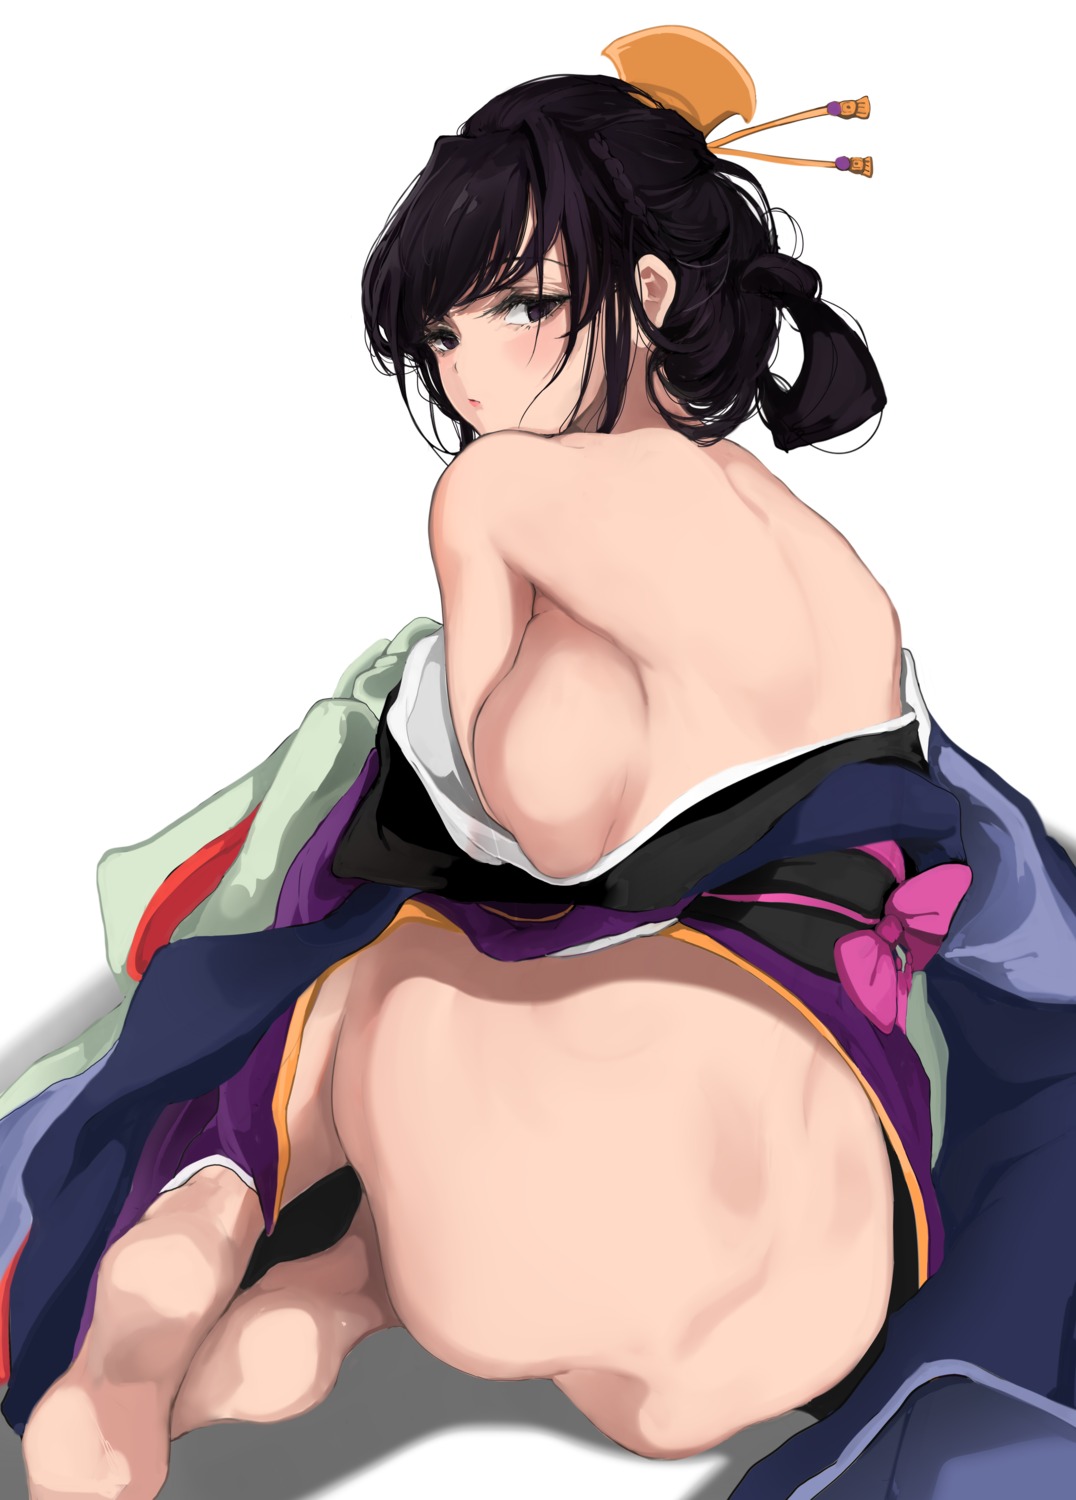 ass breasts japanese_clothes komi-san_wa_komyushou_desu. komi_shouko no_bra nopan ogata_mamimi open_shirt skirt_lift